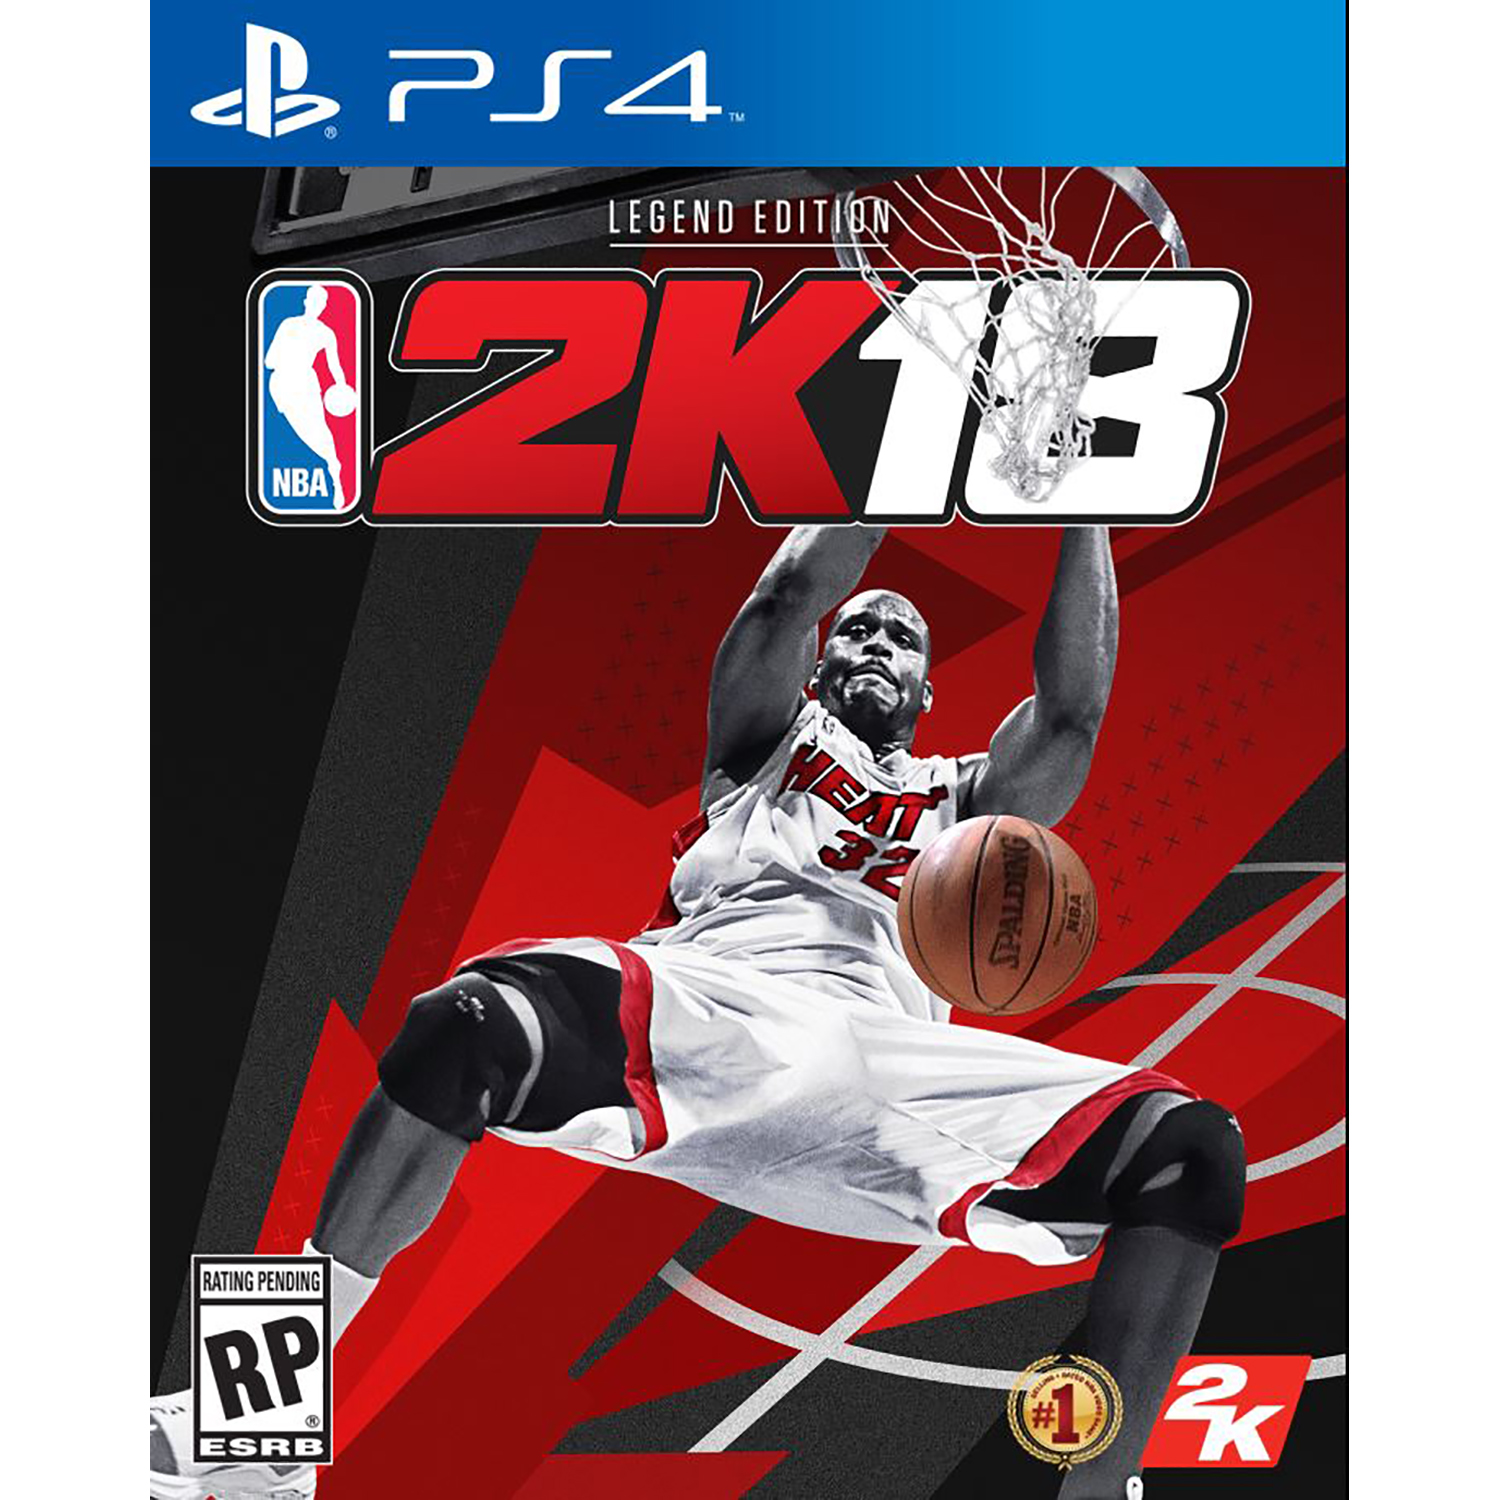 NBA 2K18 Legend Edition, 2K, PlayStation 4, 710425479120 - image 1 of 6